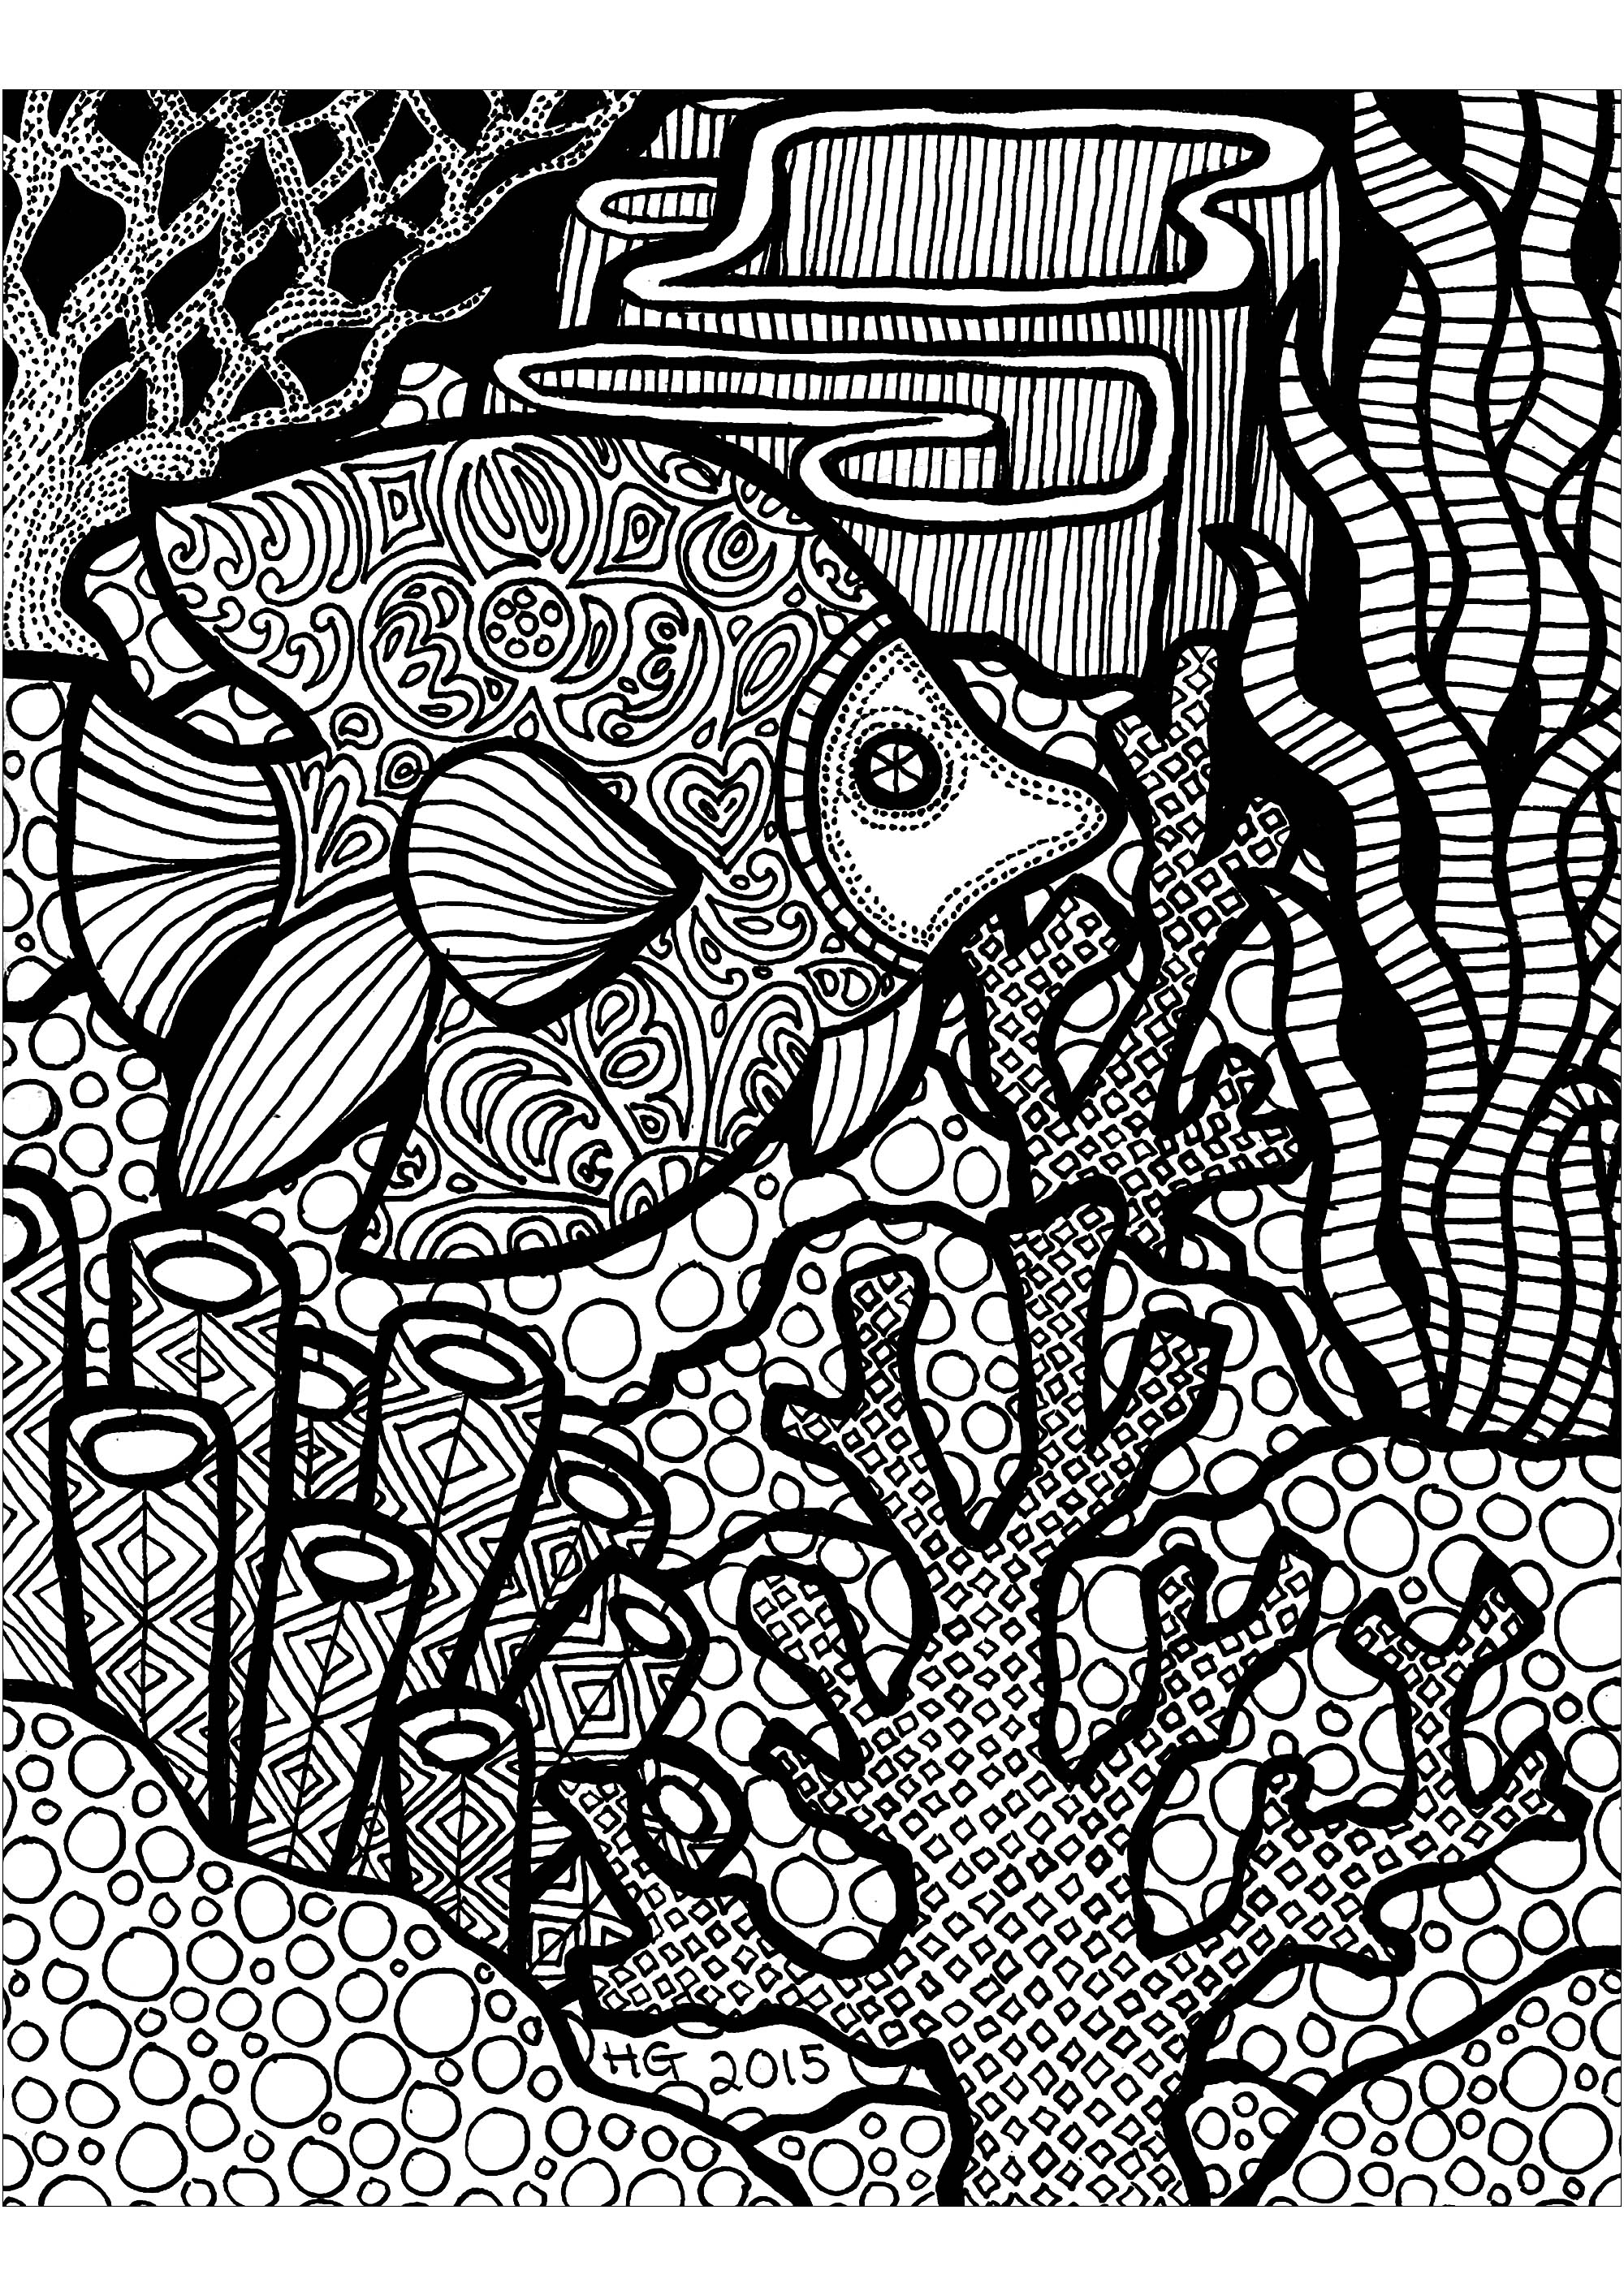 Questo bellissimo pesce protegge i coralli!, Artista : HGCreative. Arts